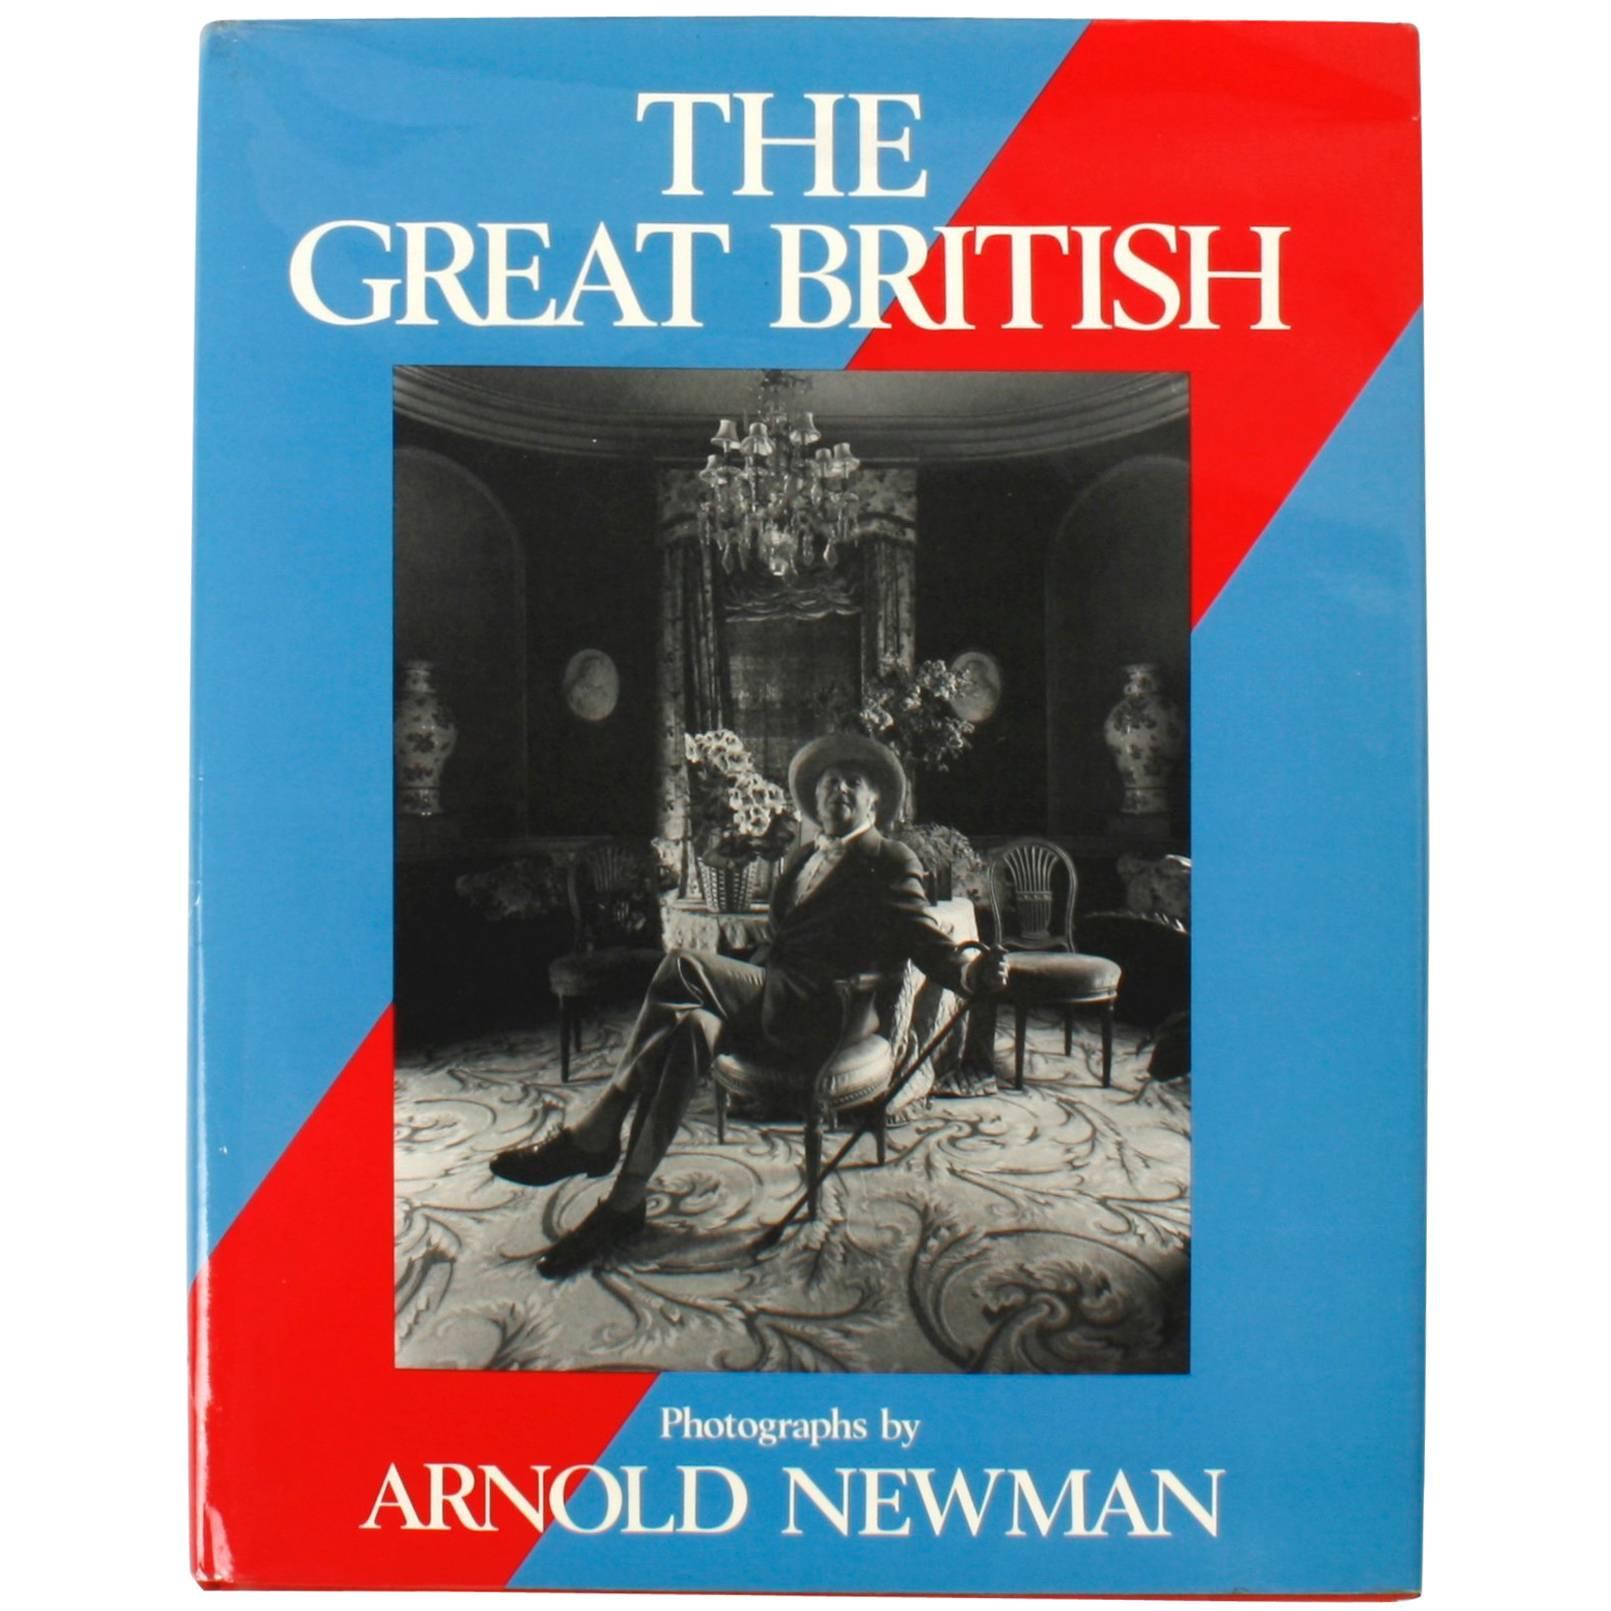 The Great British par Arnold Newman, 1ère édition